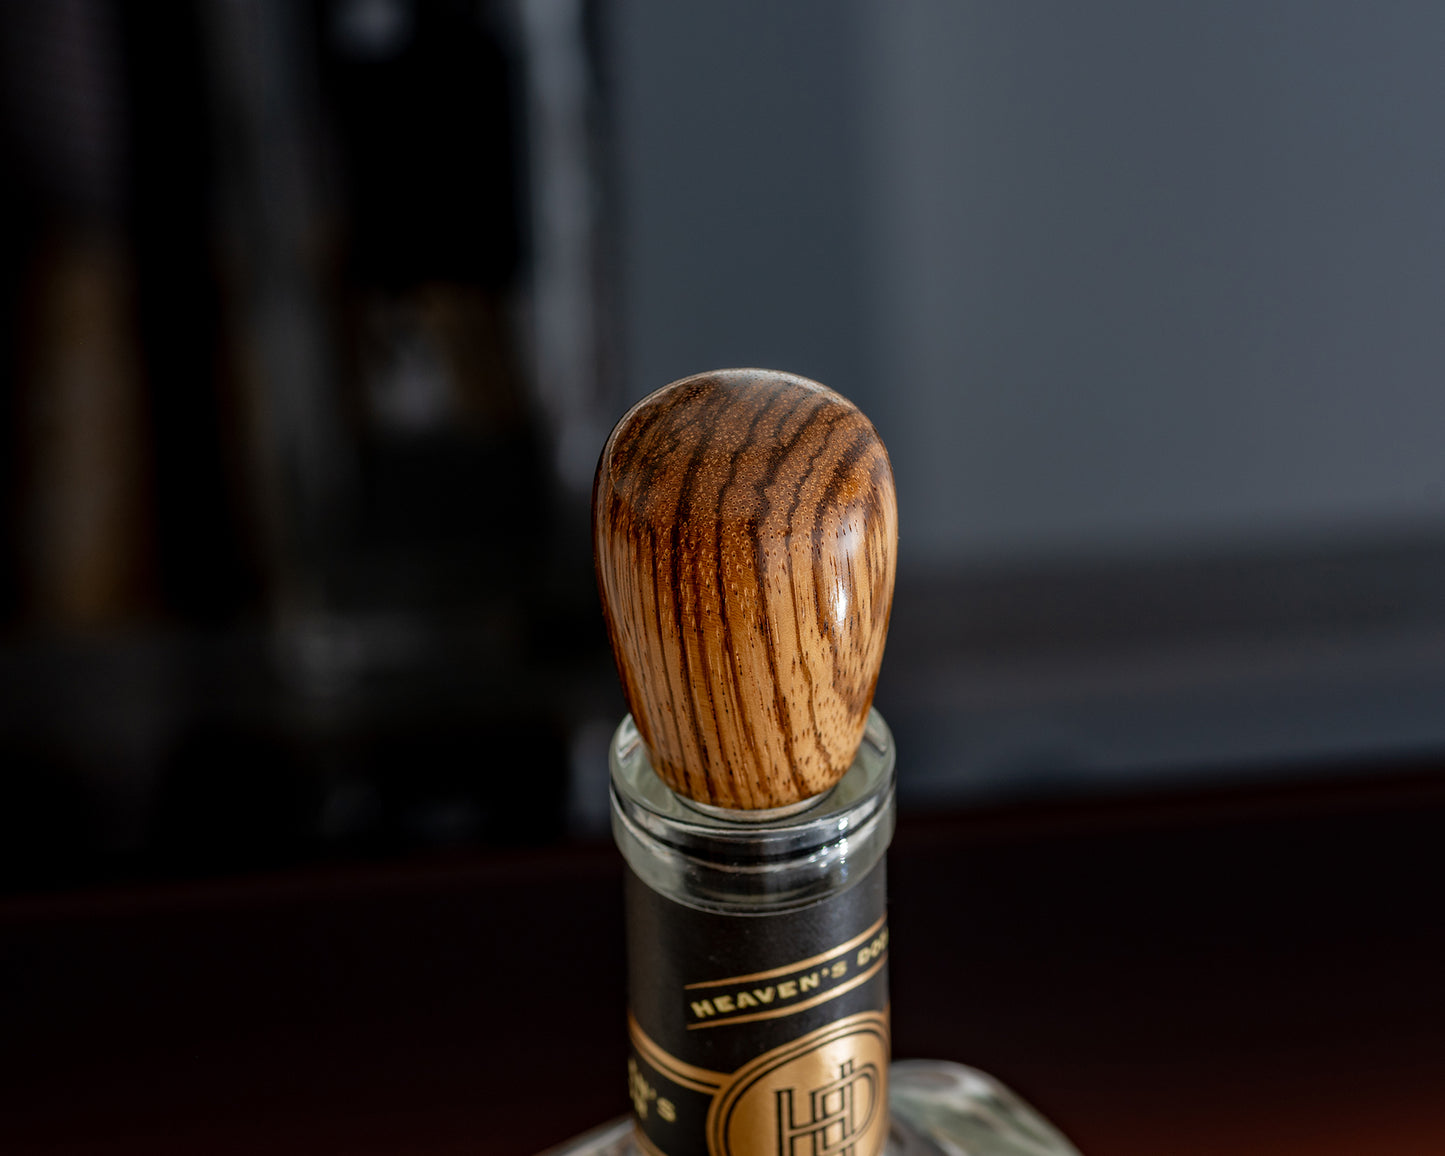 Hand-turned Wooden Bottle Stopper - Zebrano